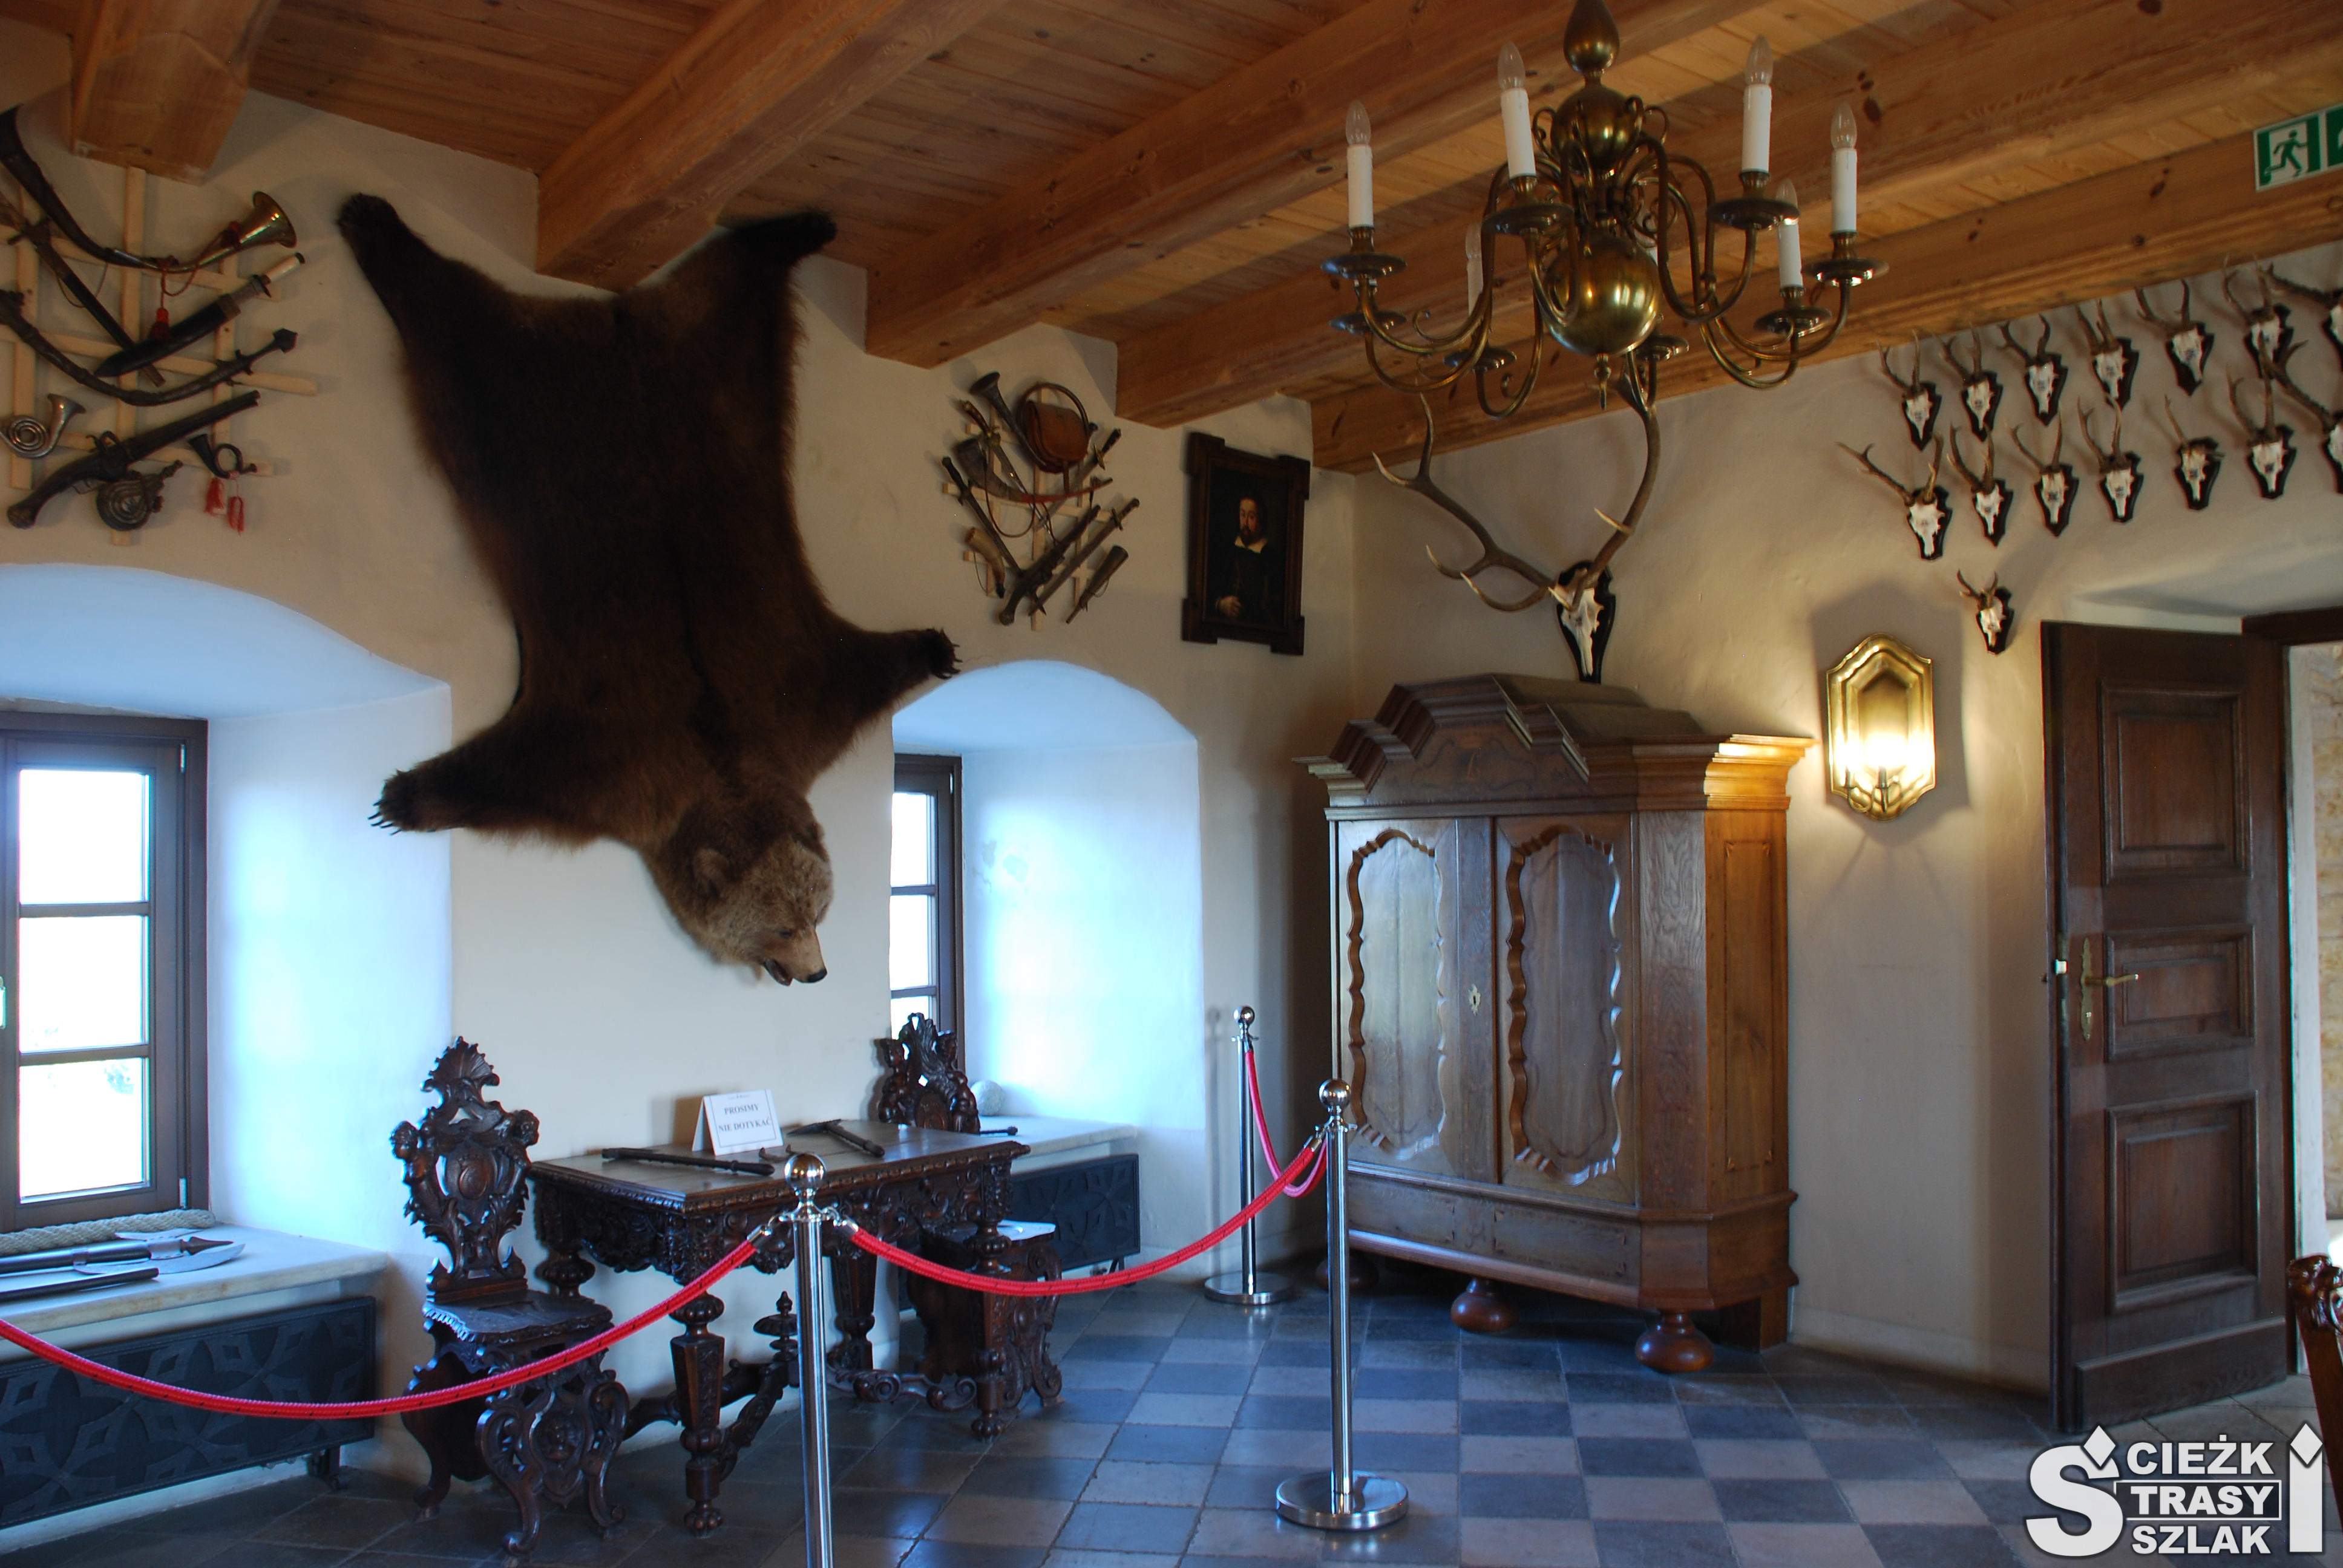 Komnata Zamku Bobolice z trofeami myśliwskimi zawieszonymi na ścianie  w postaci wypchanego niedźwiedzia i rogów